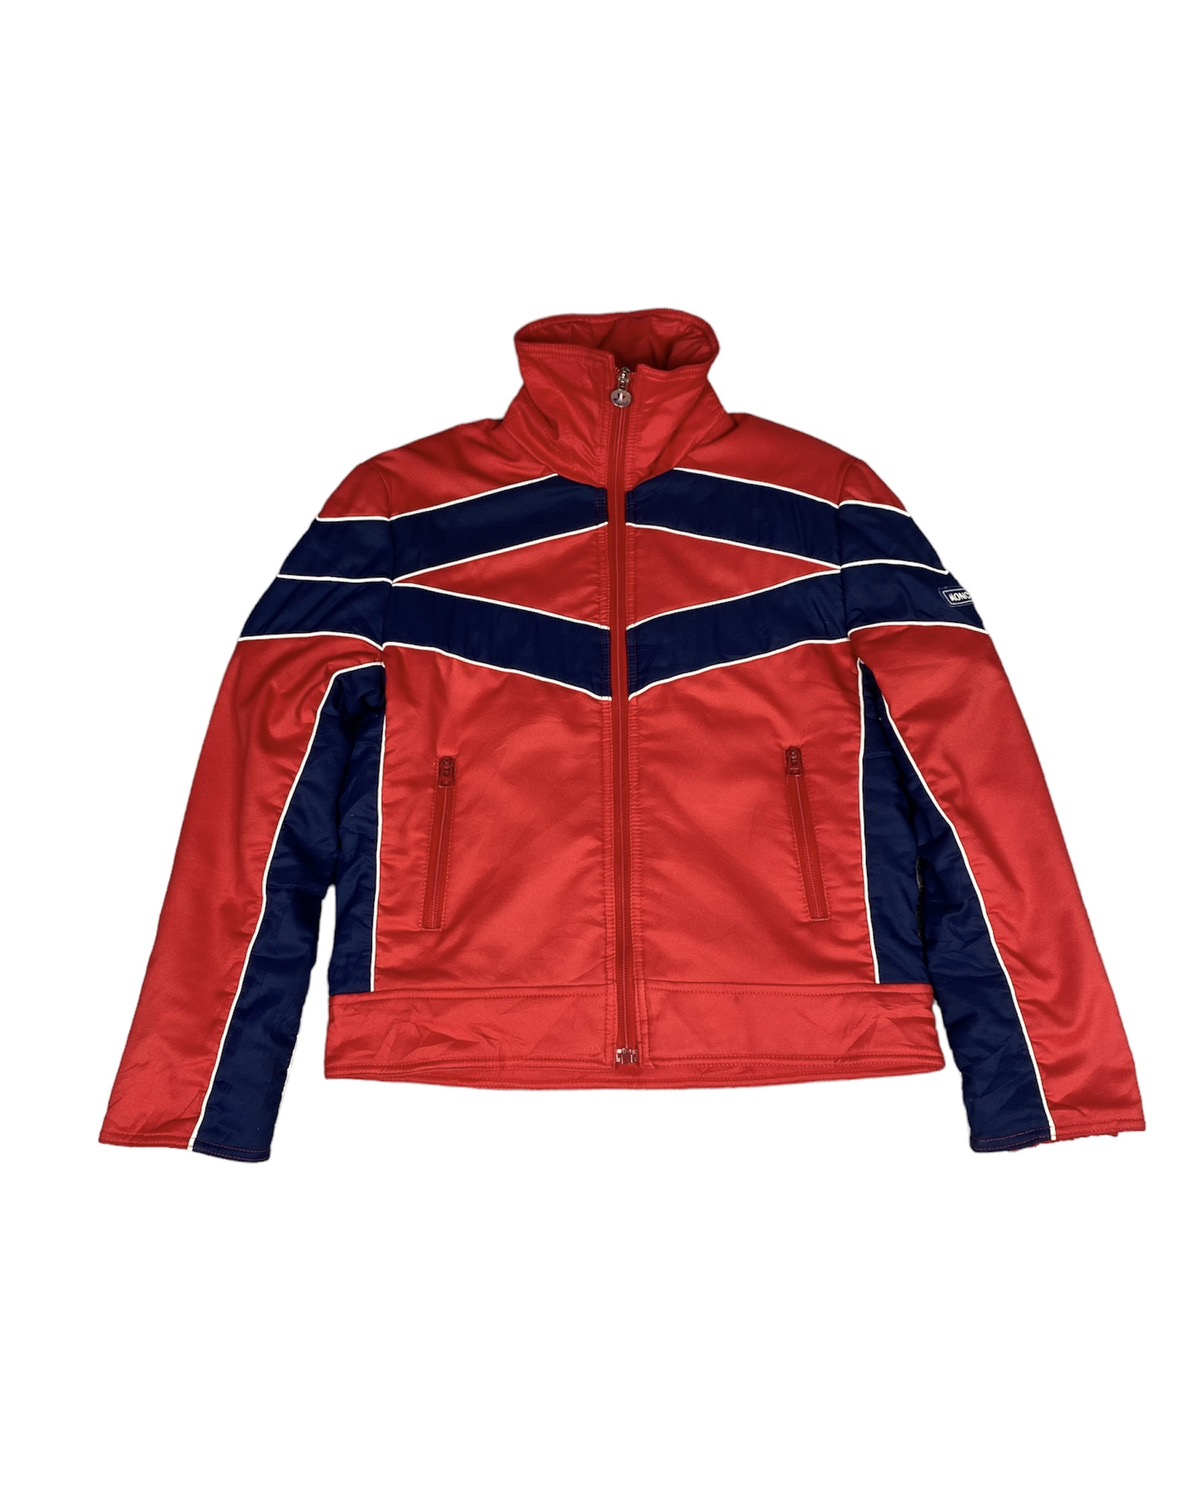 Vintage Moncler Jacket. J011 - 1